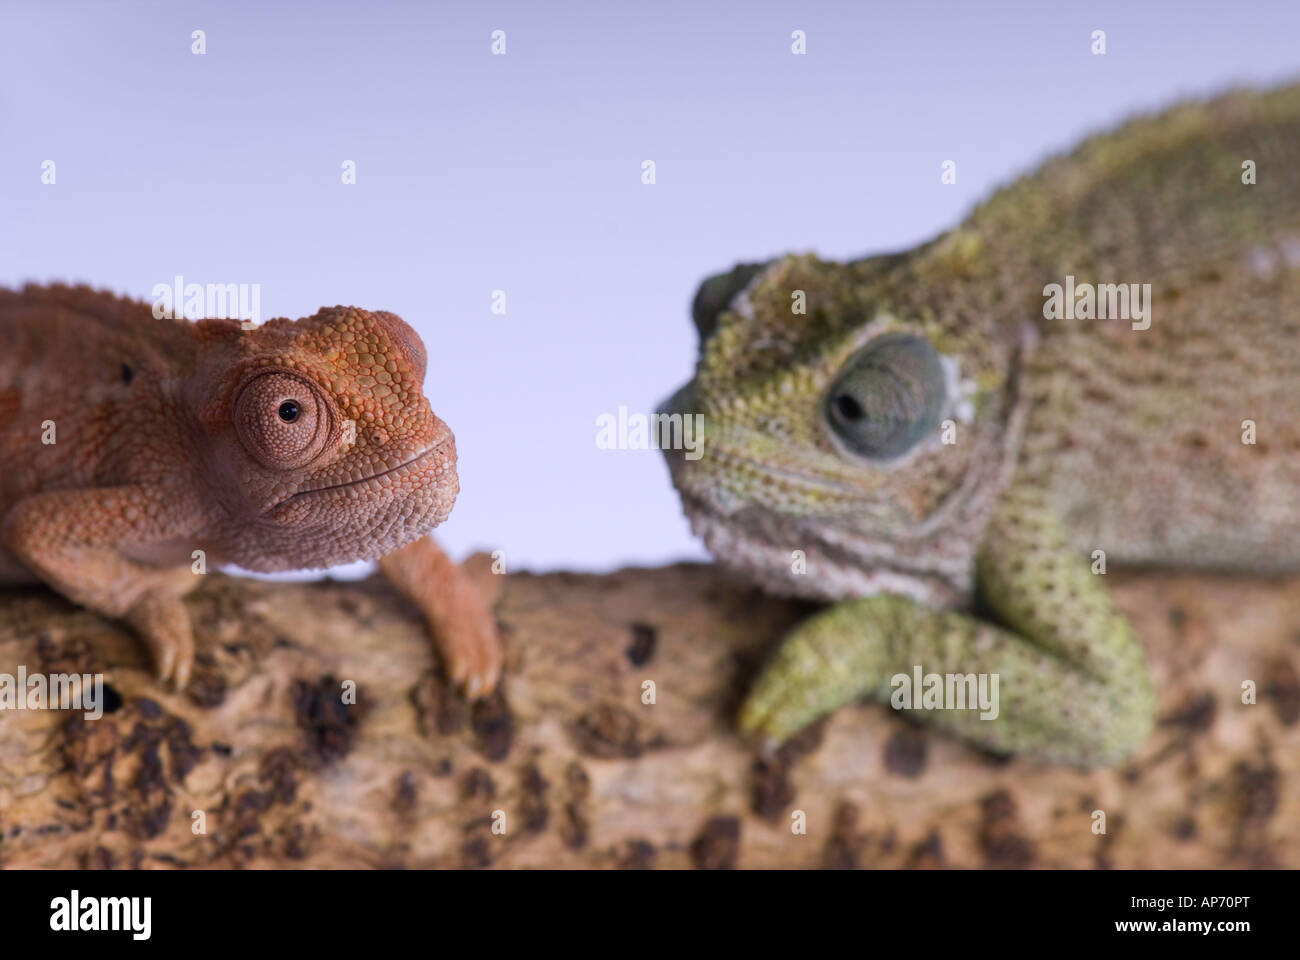 Close up of 2 chameleons Stock Photo